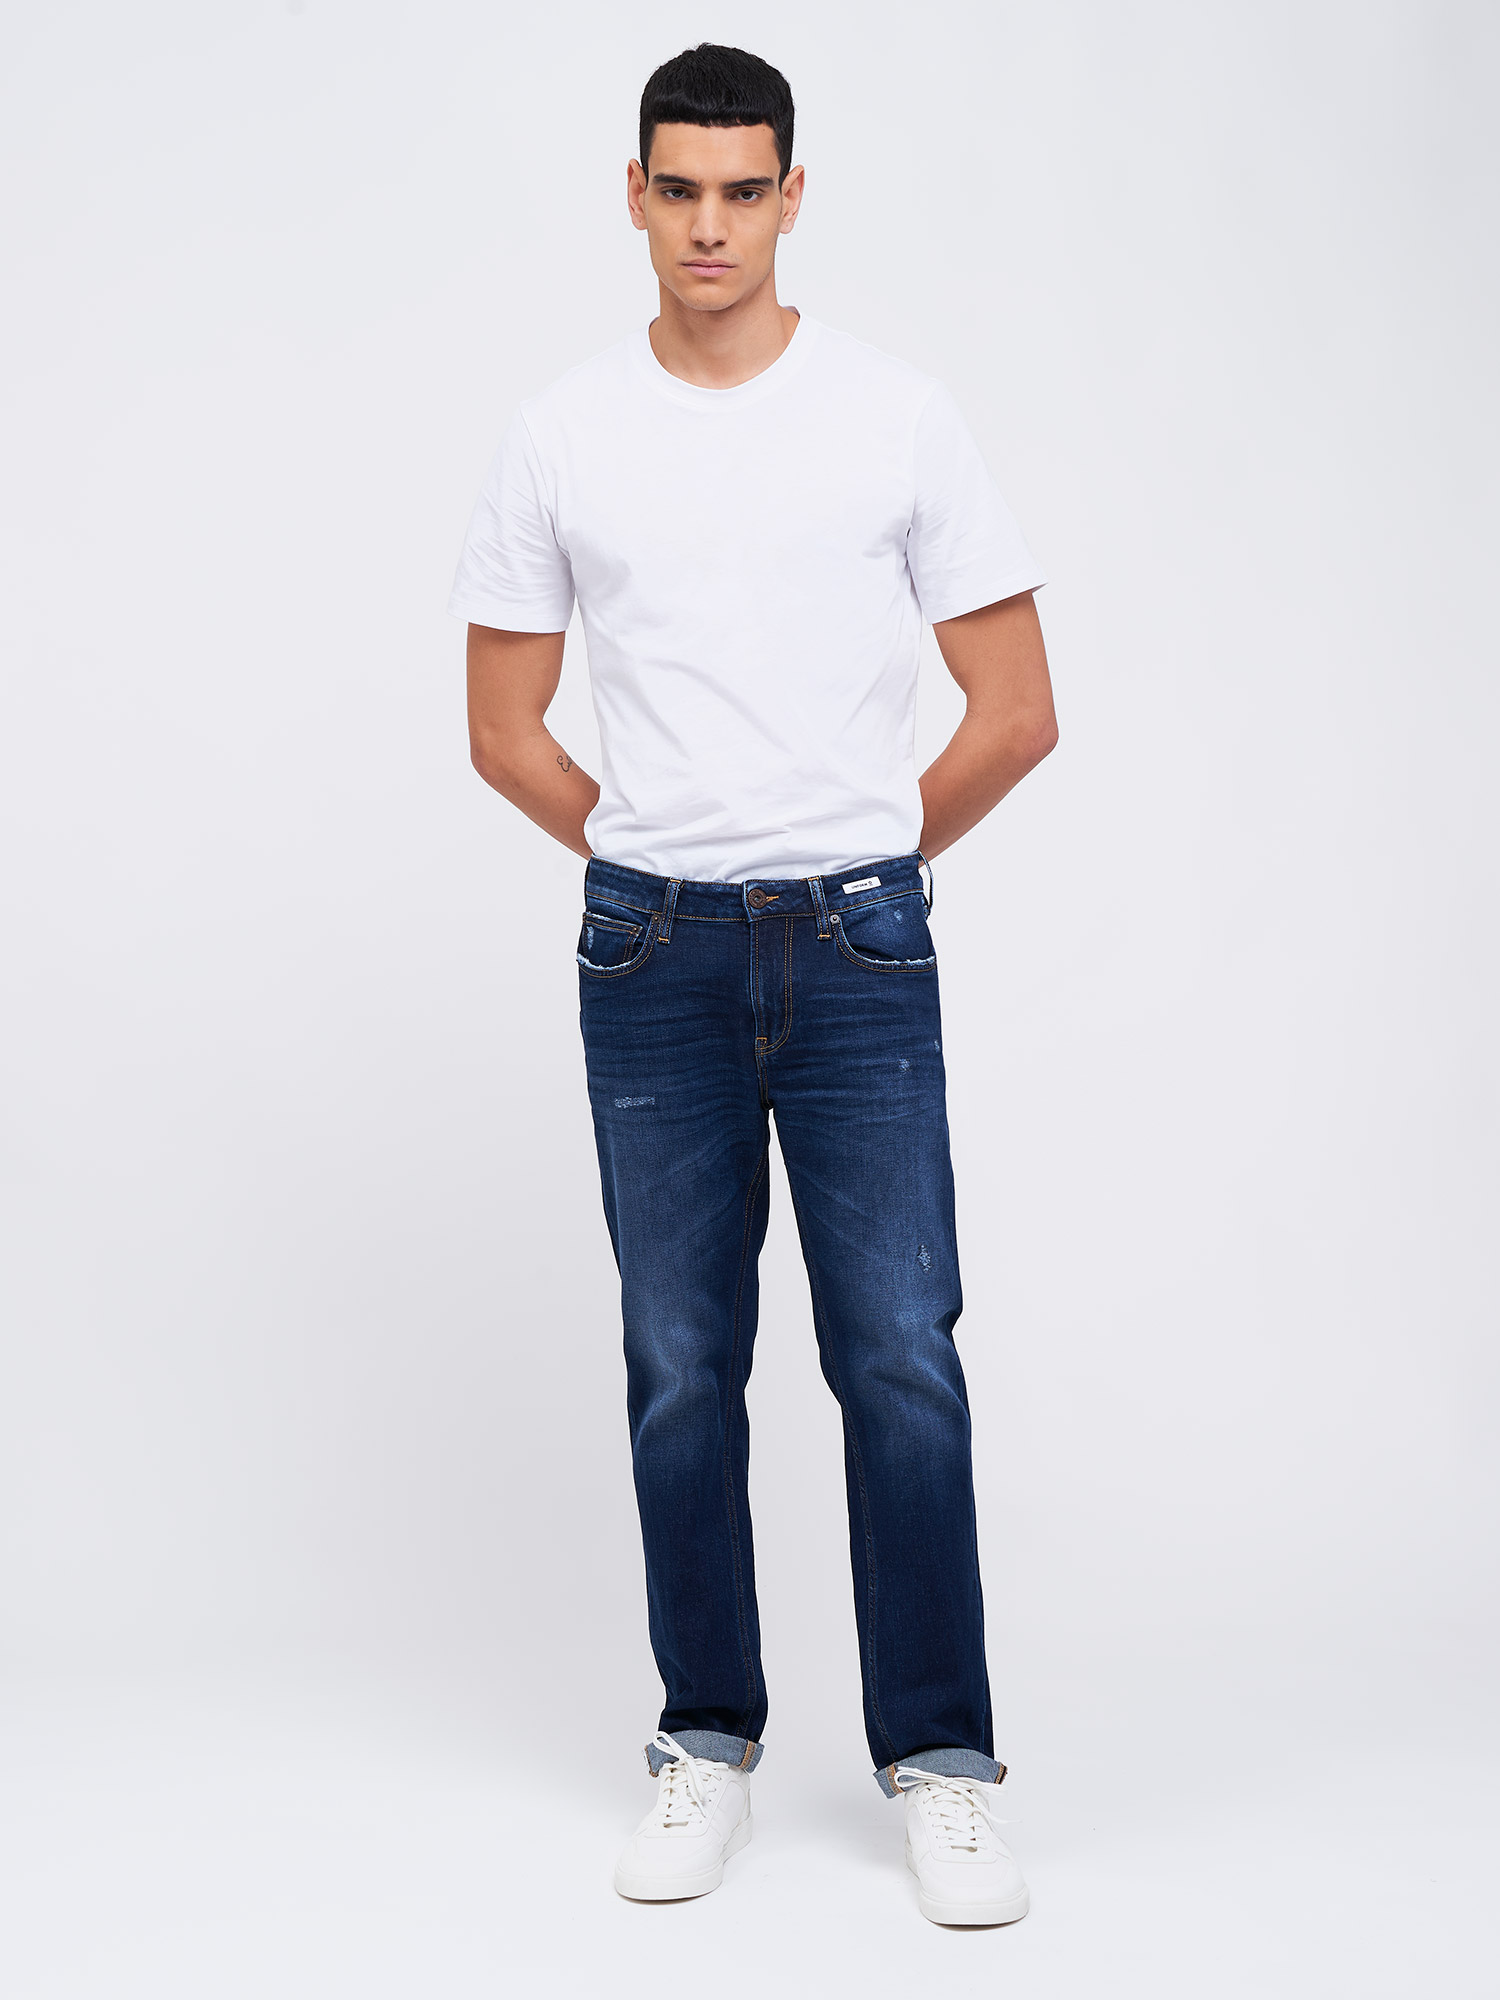 IBANEZ SLIM FIT S1 - Uniform Jeans Official